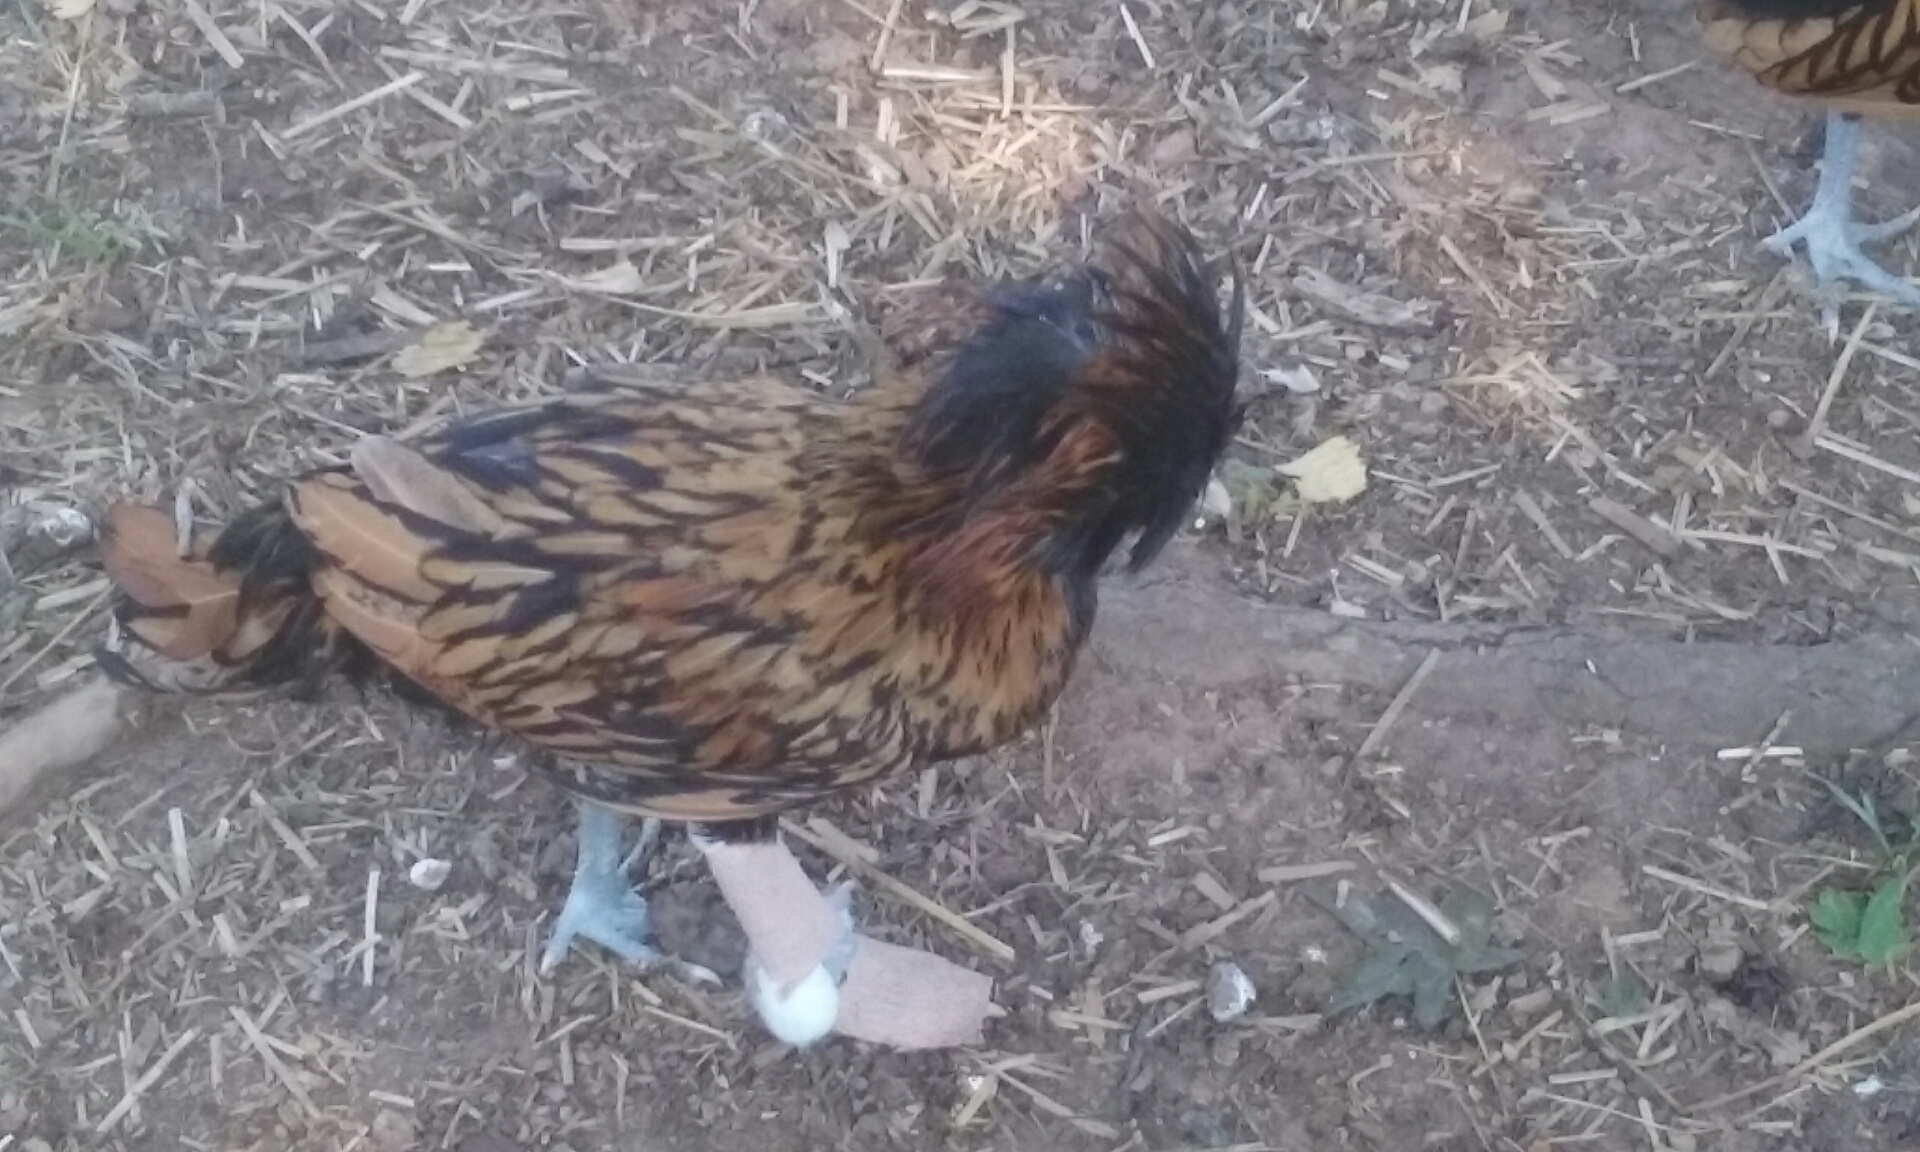 Broken Chicken in his walking boot